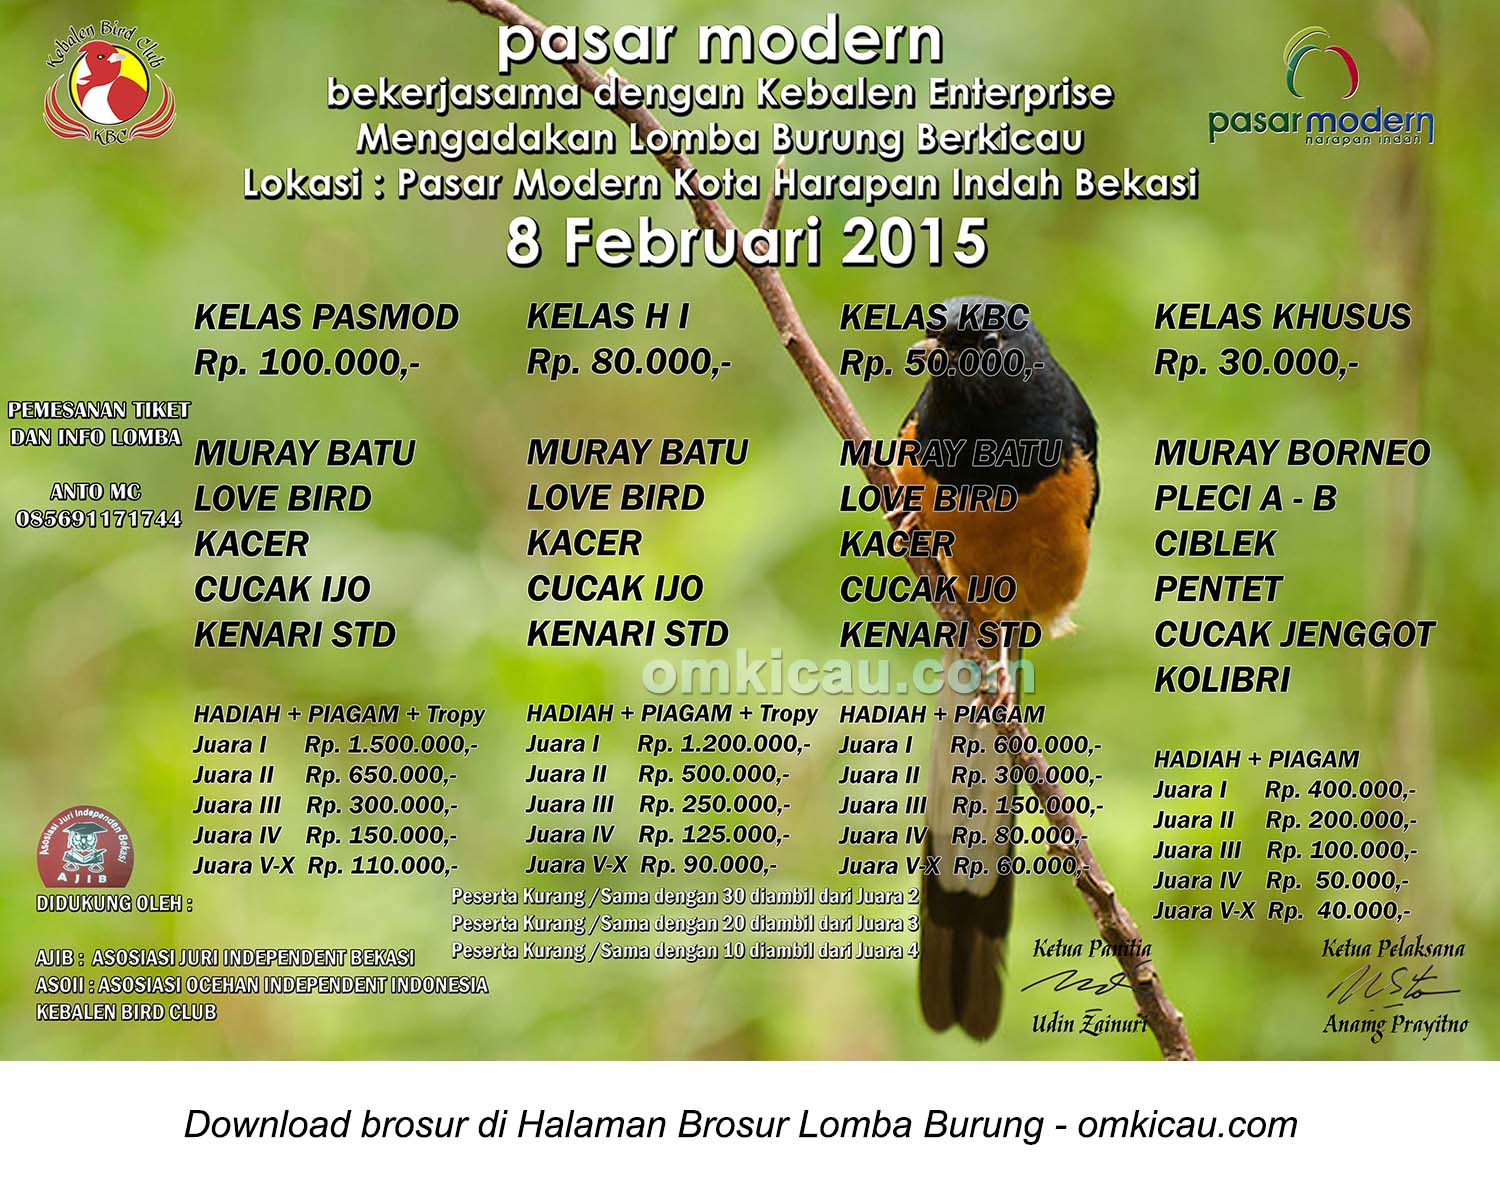 Brosur Lomba Burung Berkicau Pasar Modern Harapan Indah, Bekasi, 8 Februari 2015